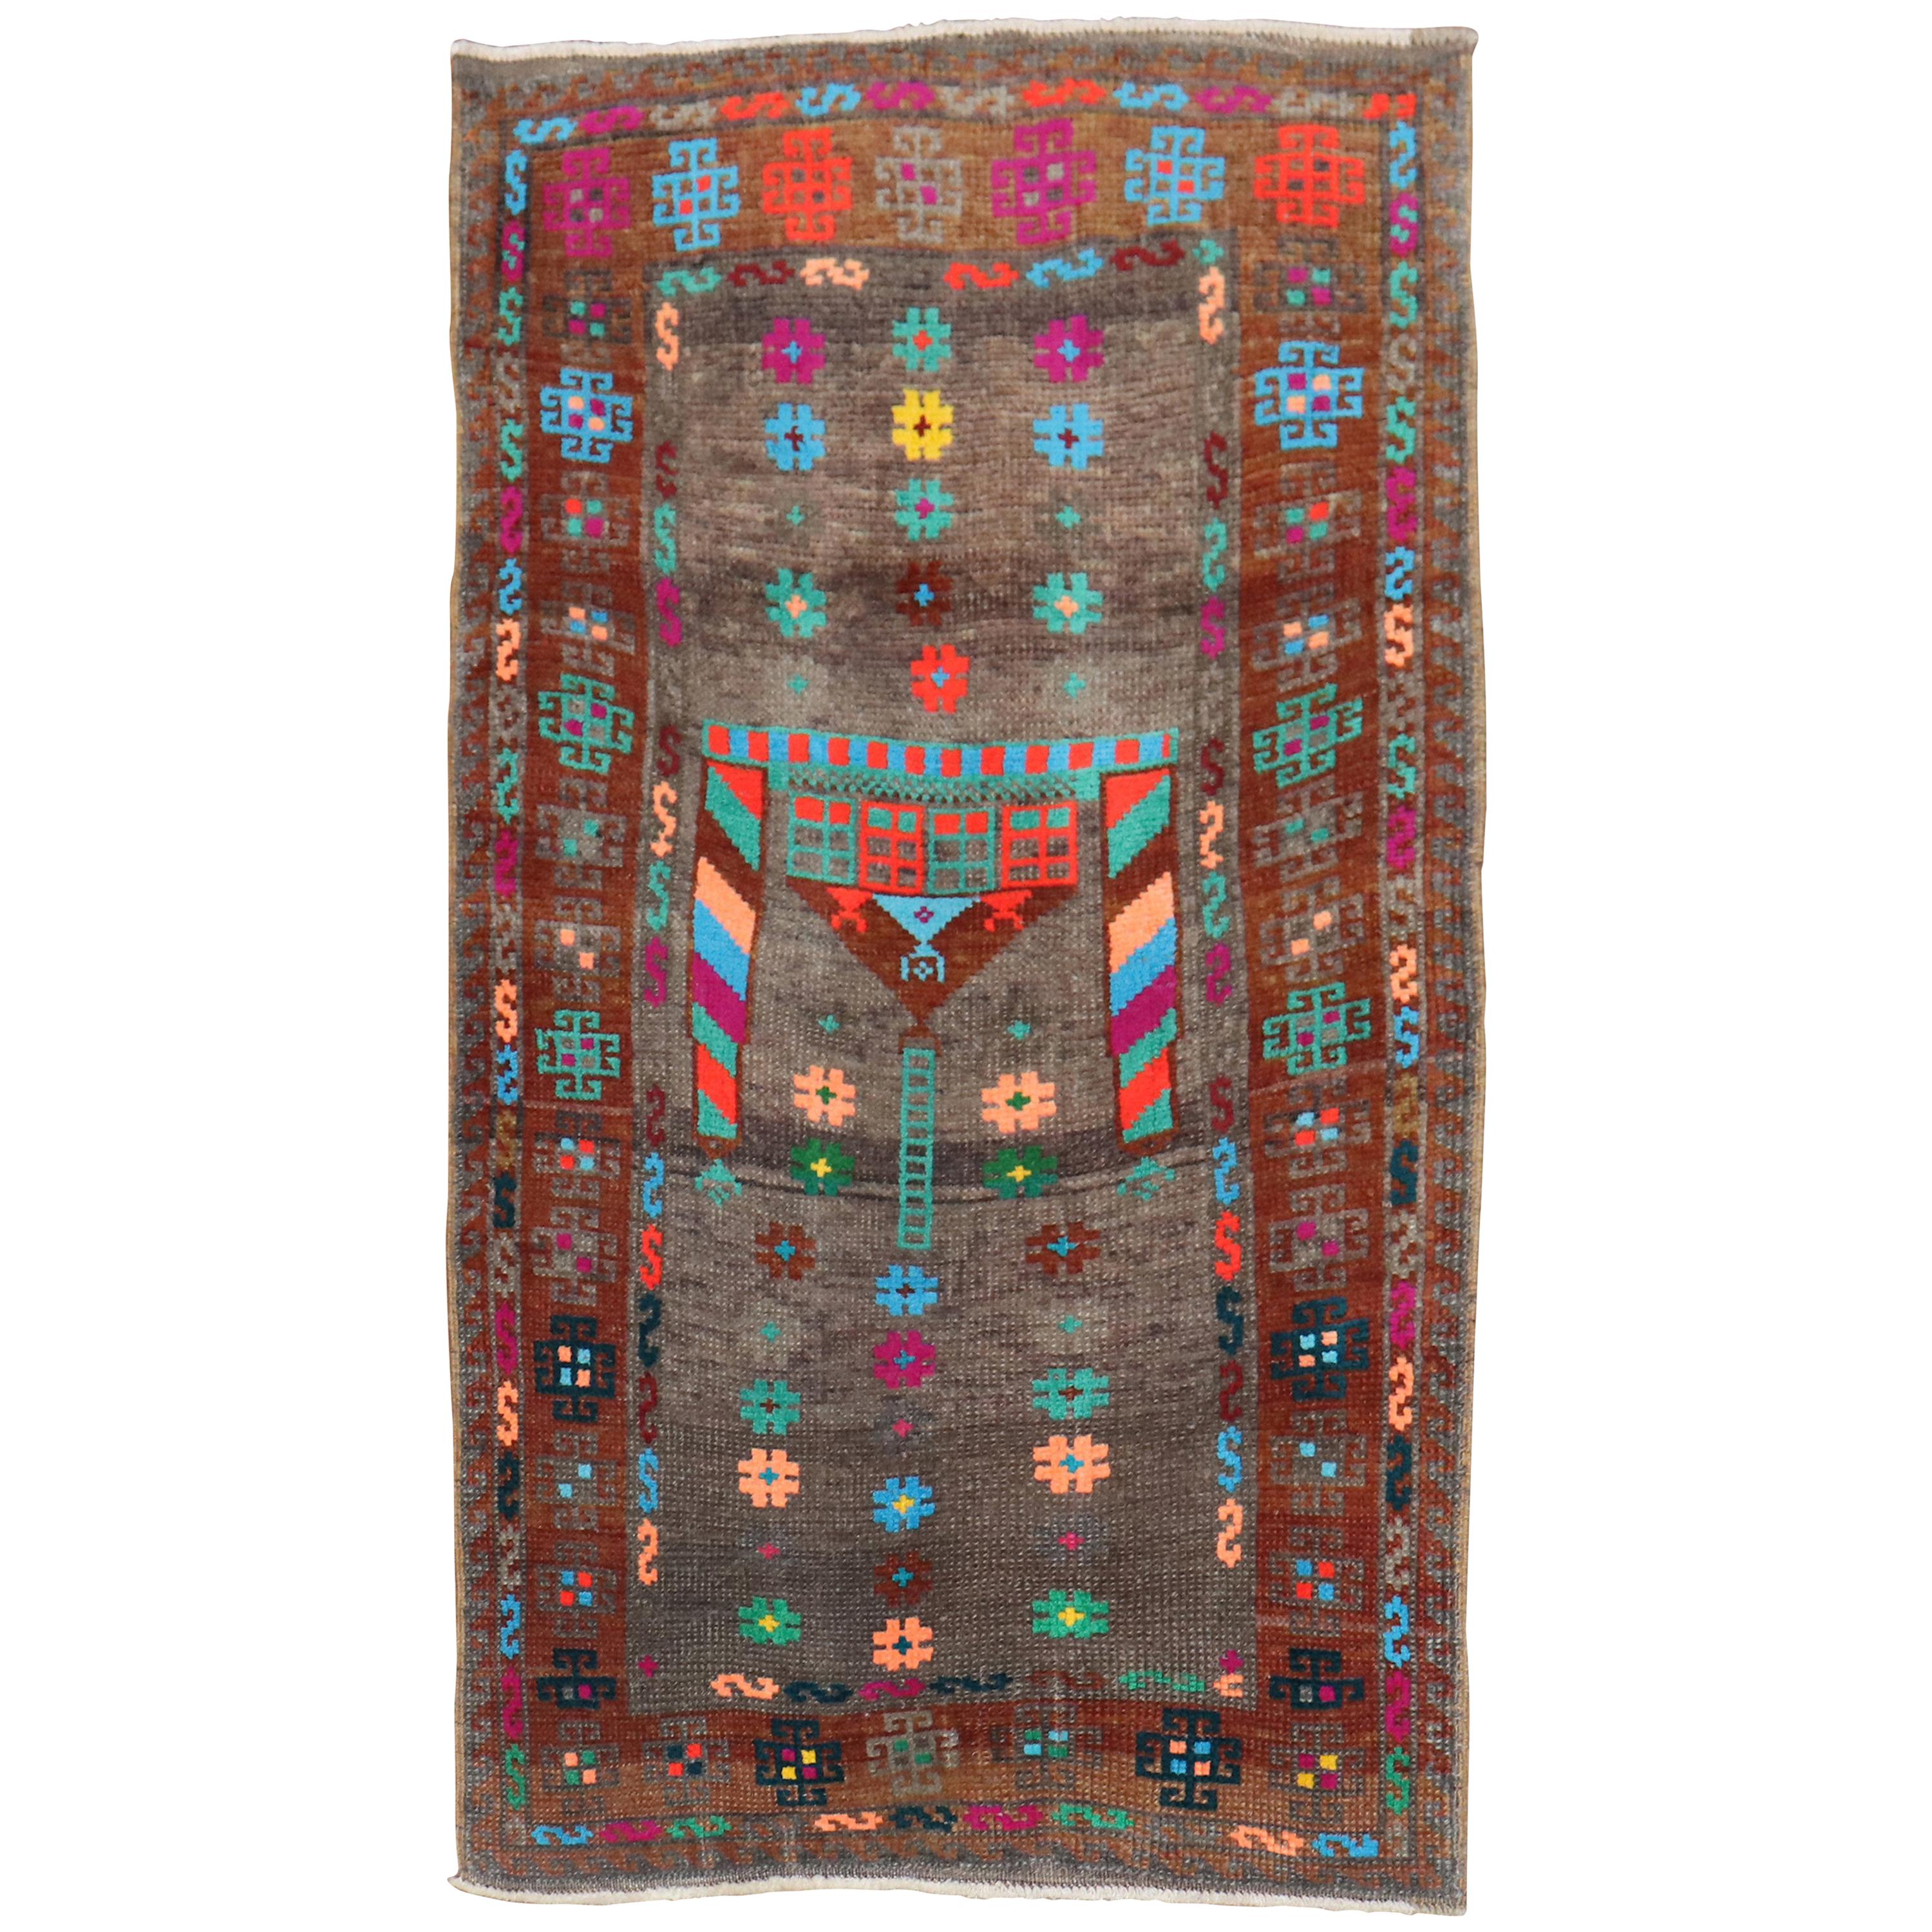 Tapis turc funky du 20ème siècle en coton et laine, taille du tapis